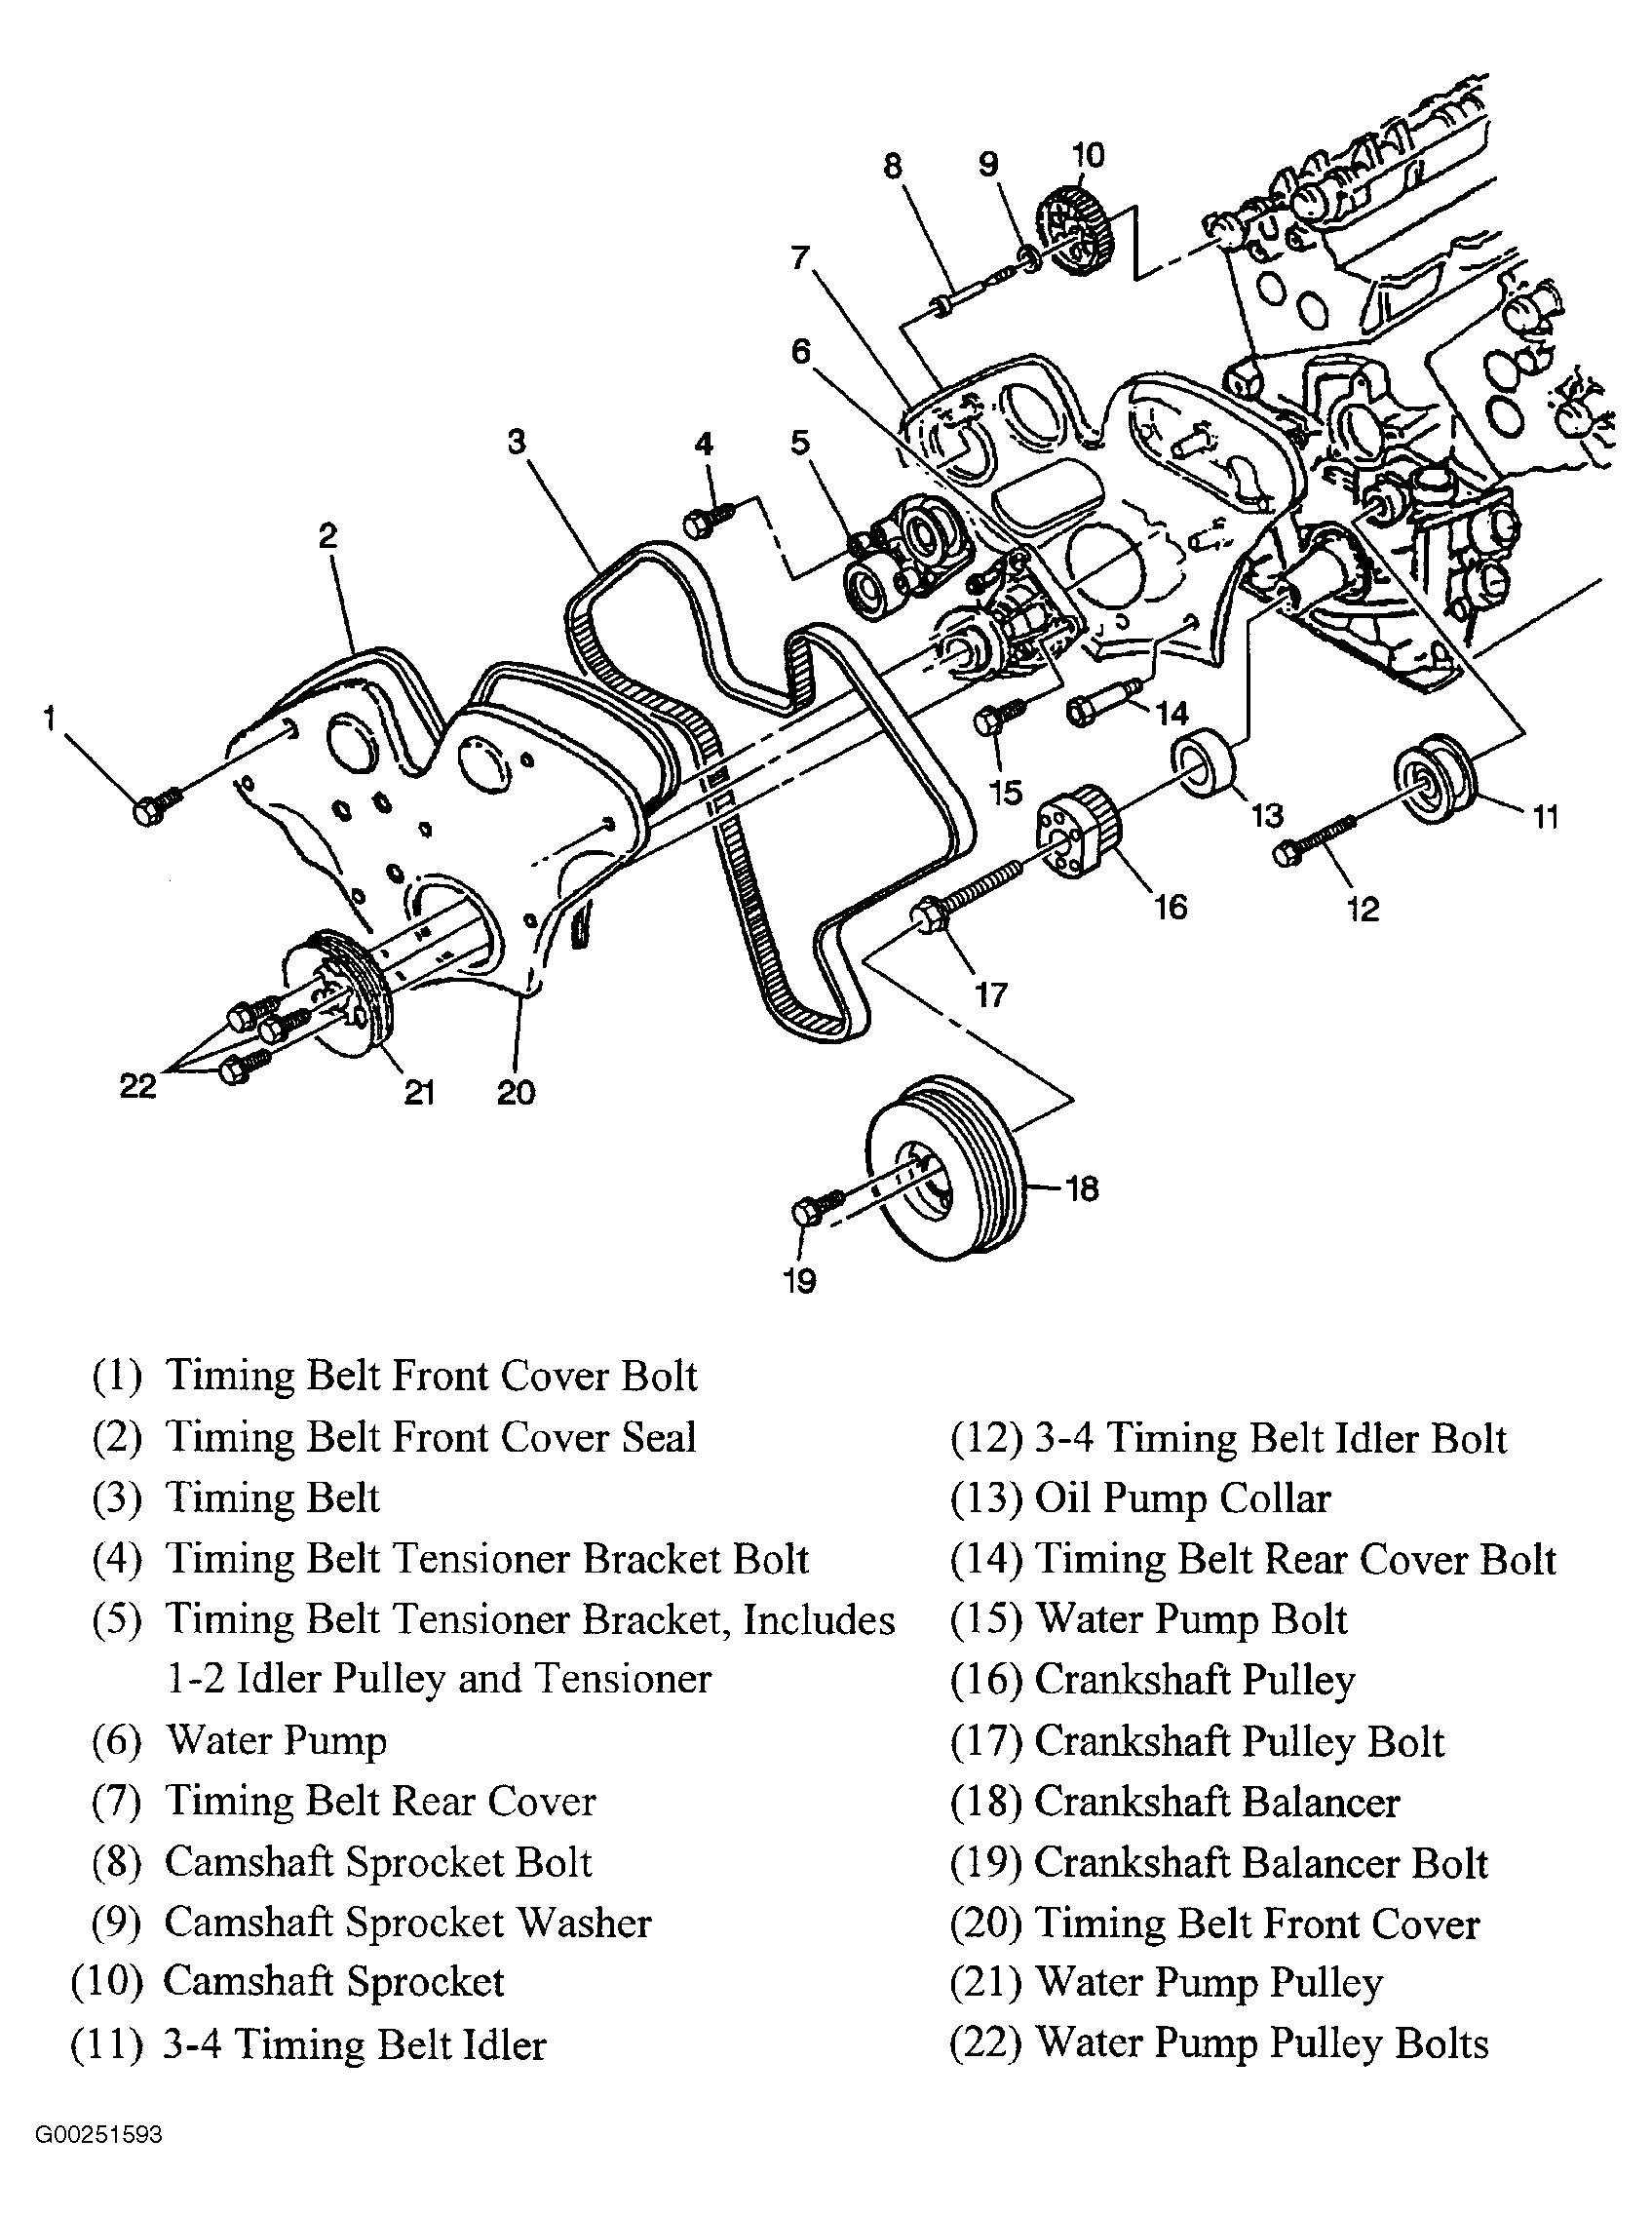 Car Wheel Parts Diagram Pin On Auto Of Car Wheel Parts Diagram